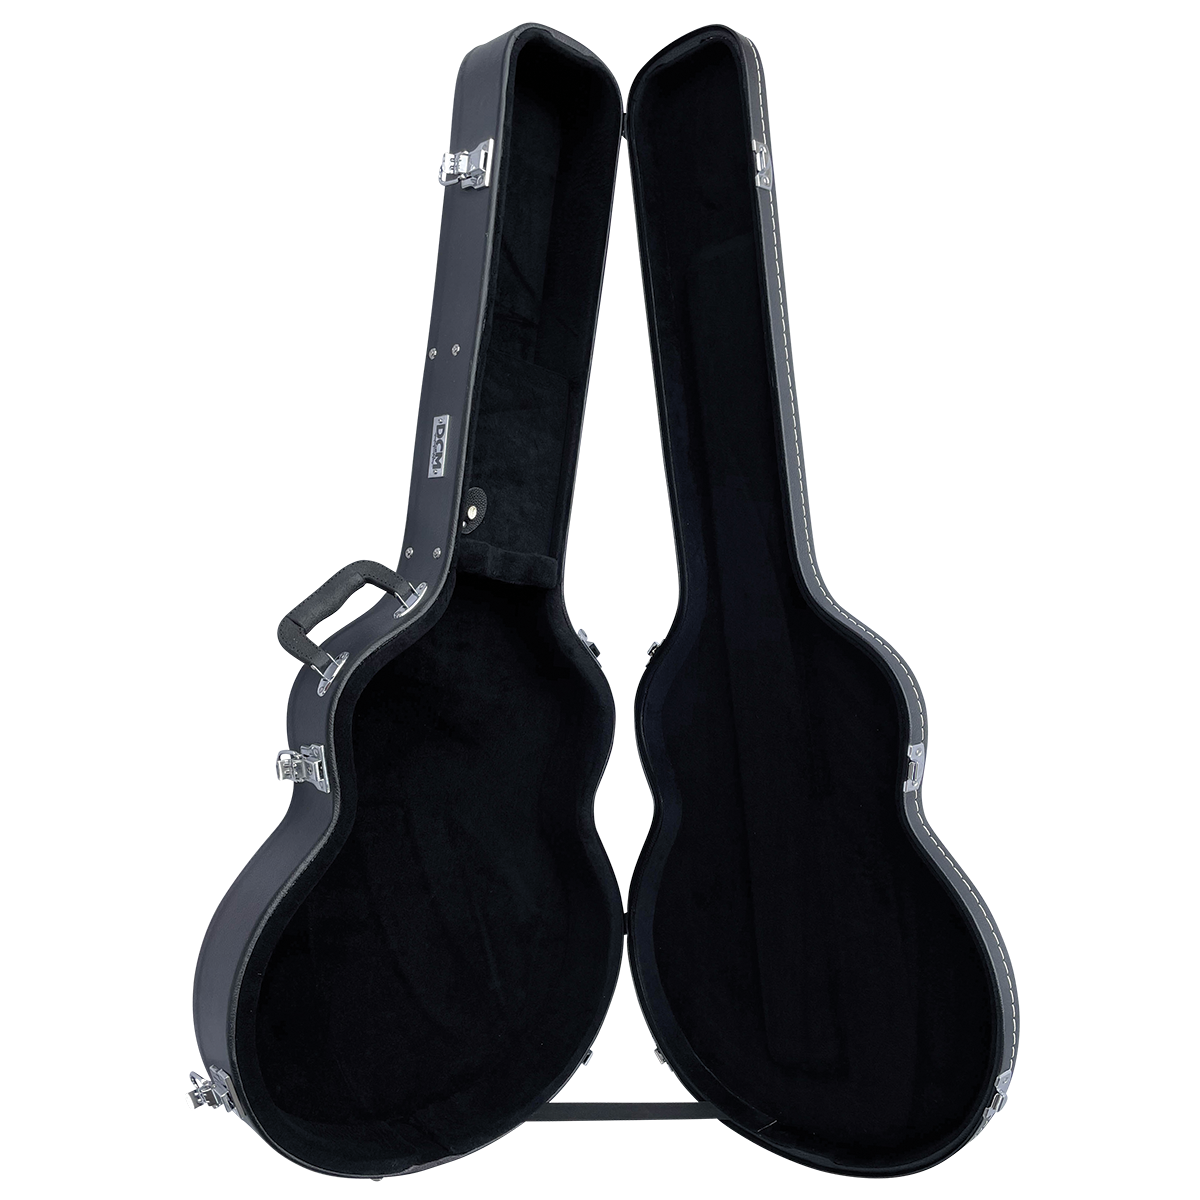 DCM Semi Acoustic Guitar Hardcase (Suits 335)